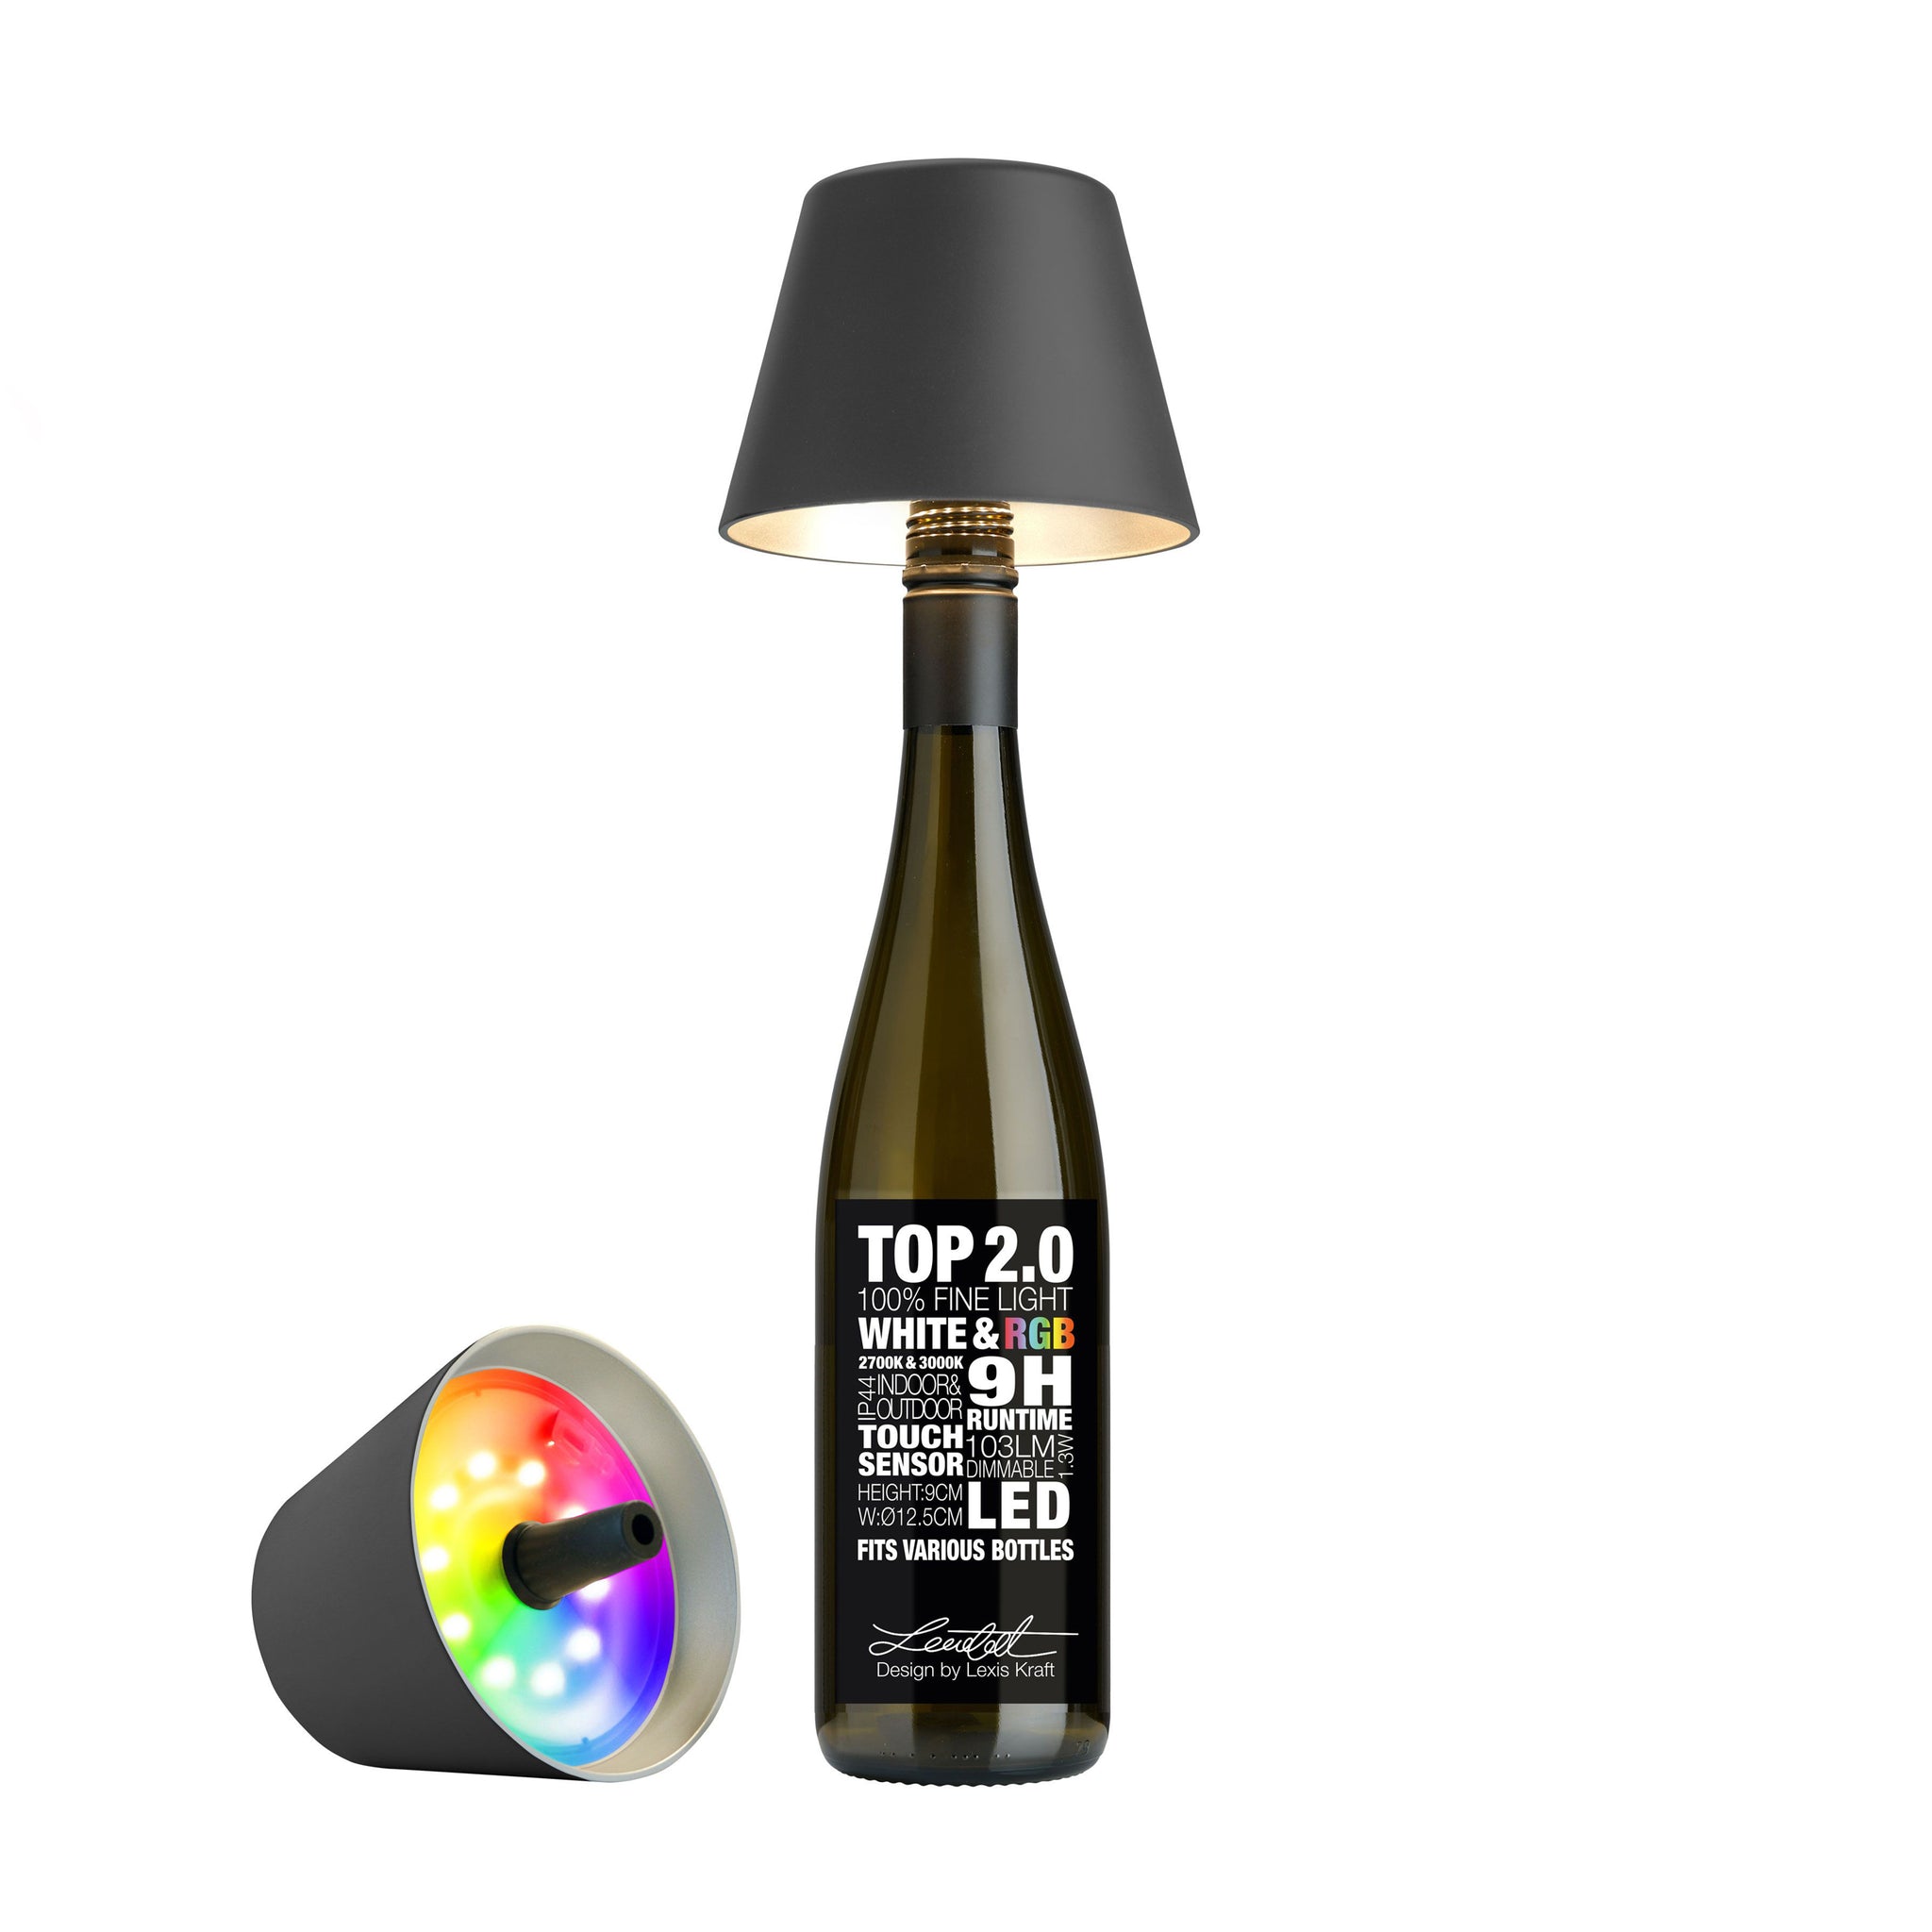 Sompex Top 2.0 oplaadbare Flessenlamp│Antraciet│Buitenverlichting│art. 72532│Voorkant met lamp op fles en naaast fles met RGB kleuren